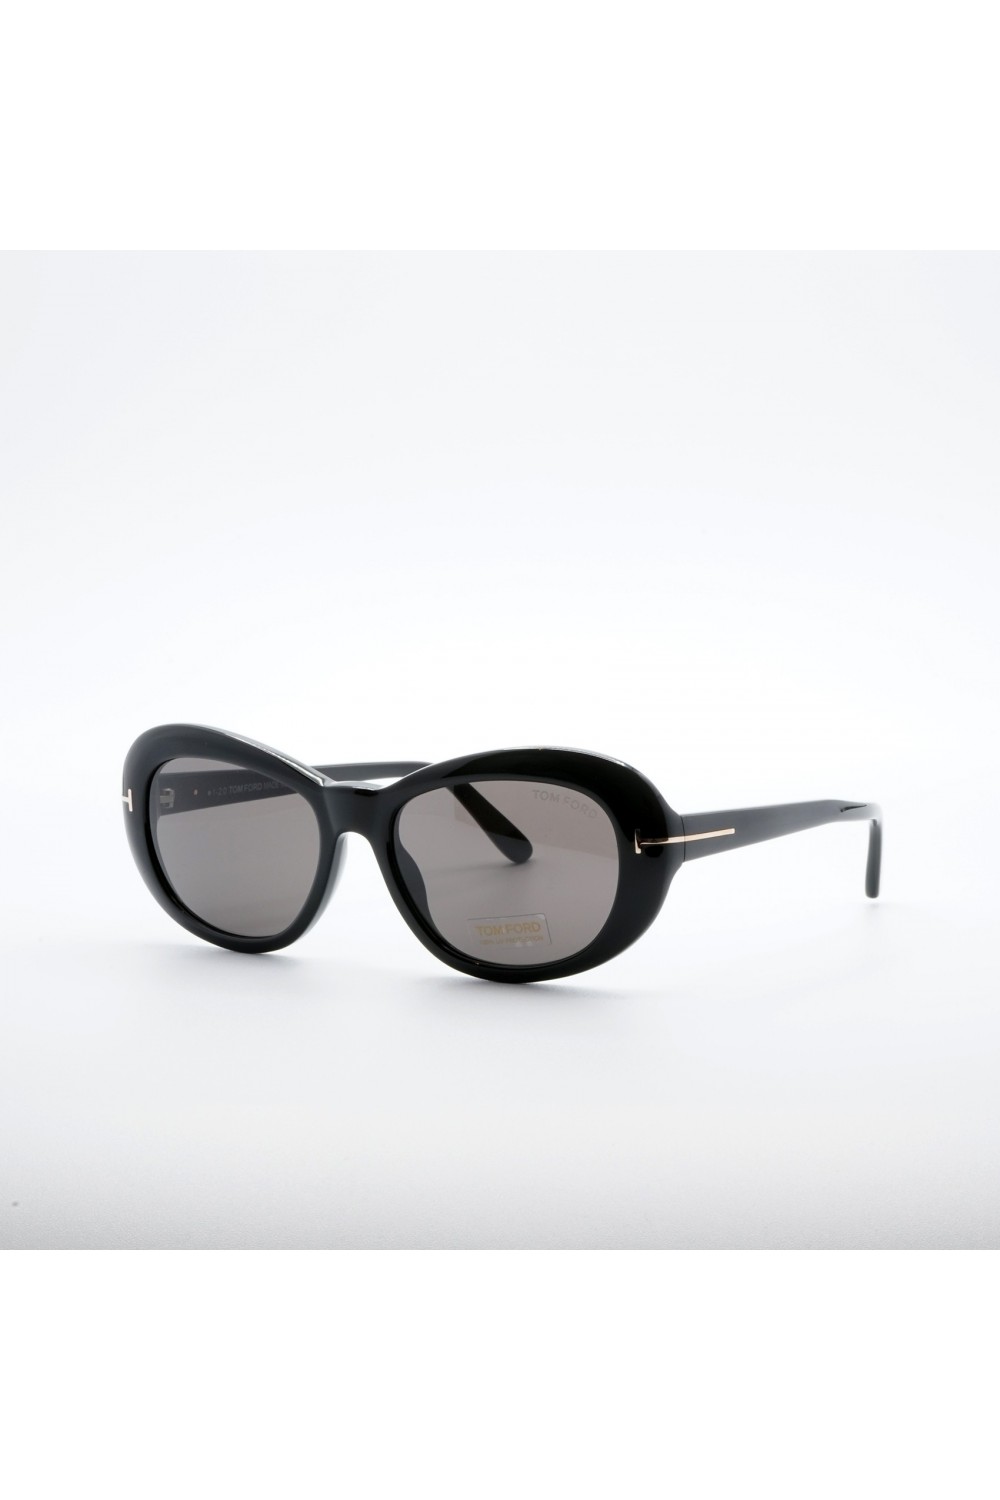 Tom Ford - Occhiali da sole in celluloide ovale per donna nero, tartarugato